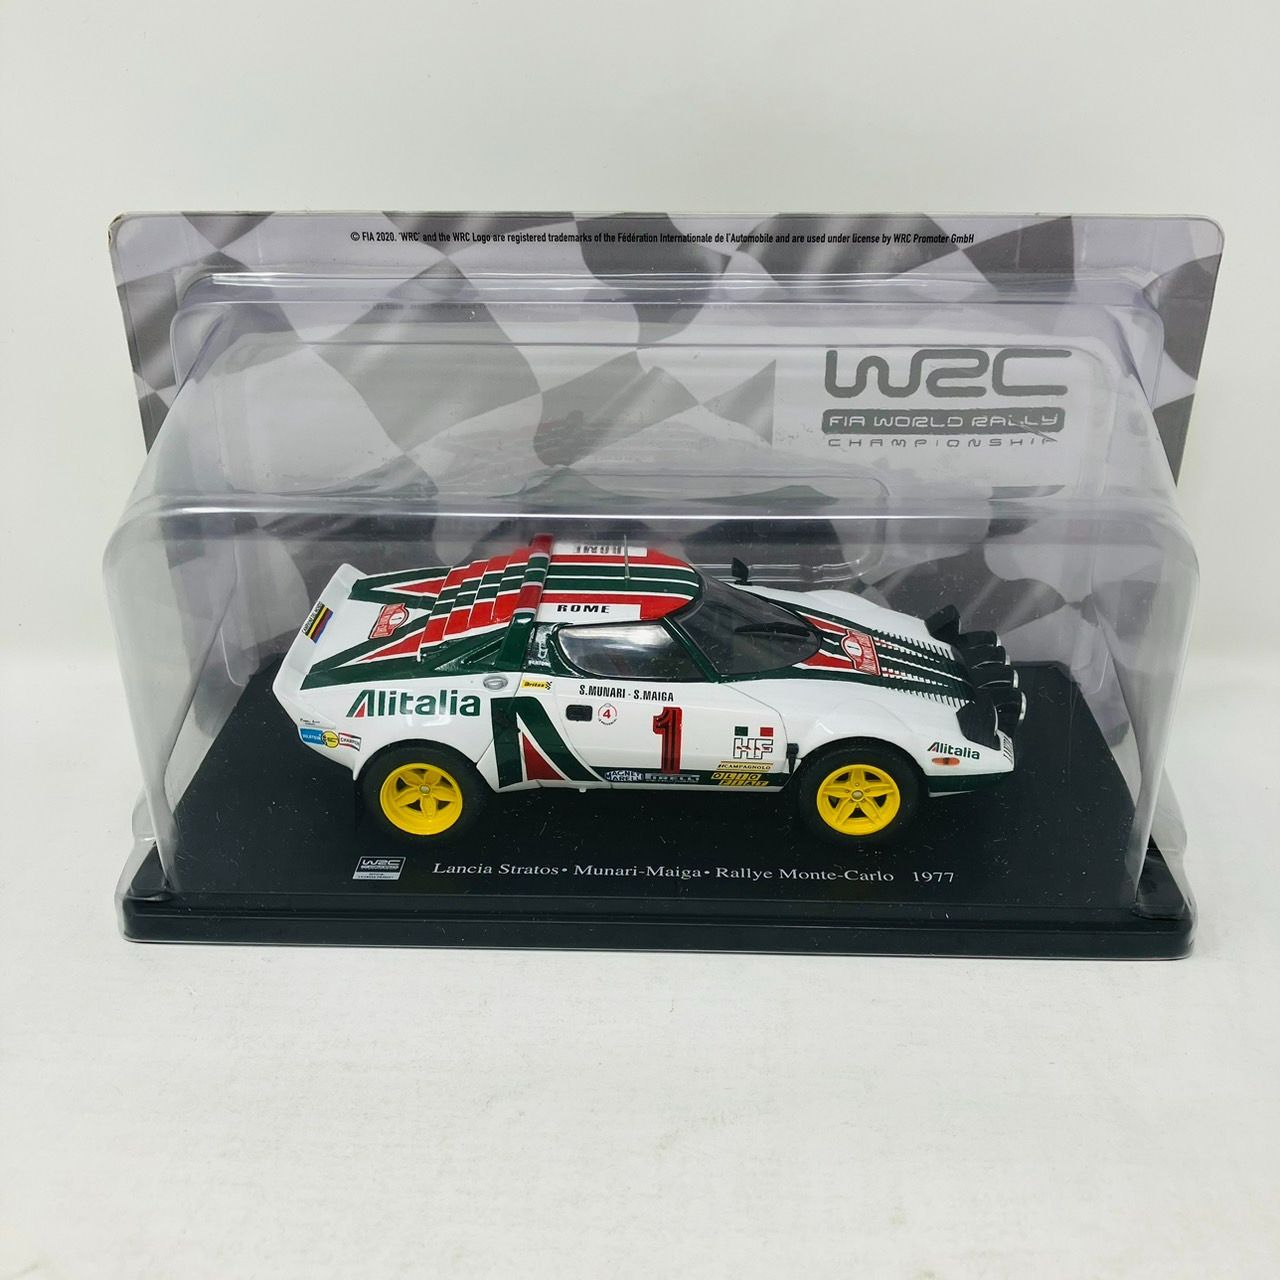 WRC 1/24 ランチア ストラトス 1977 ミニカー / ラリーカー Lancia 